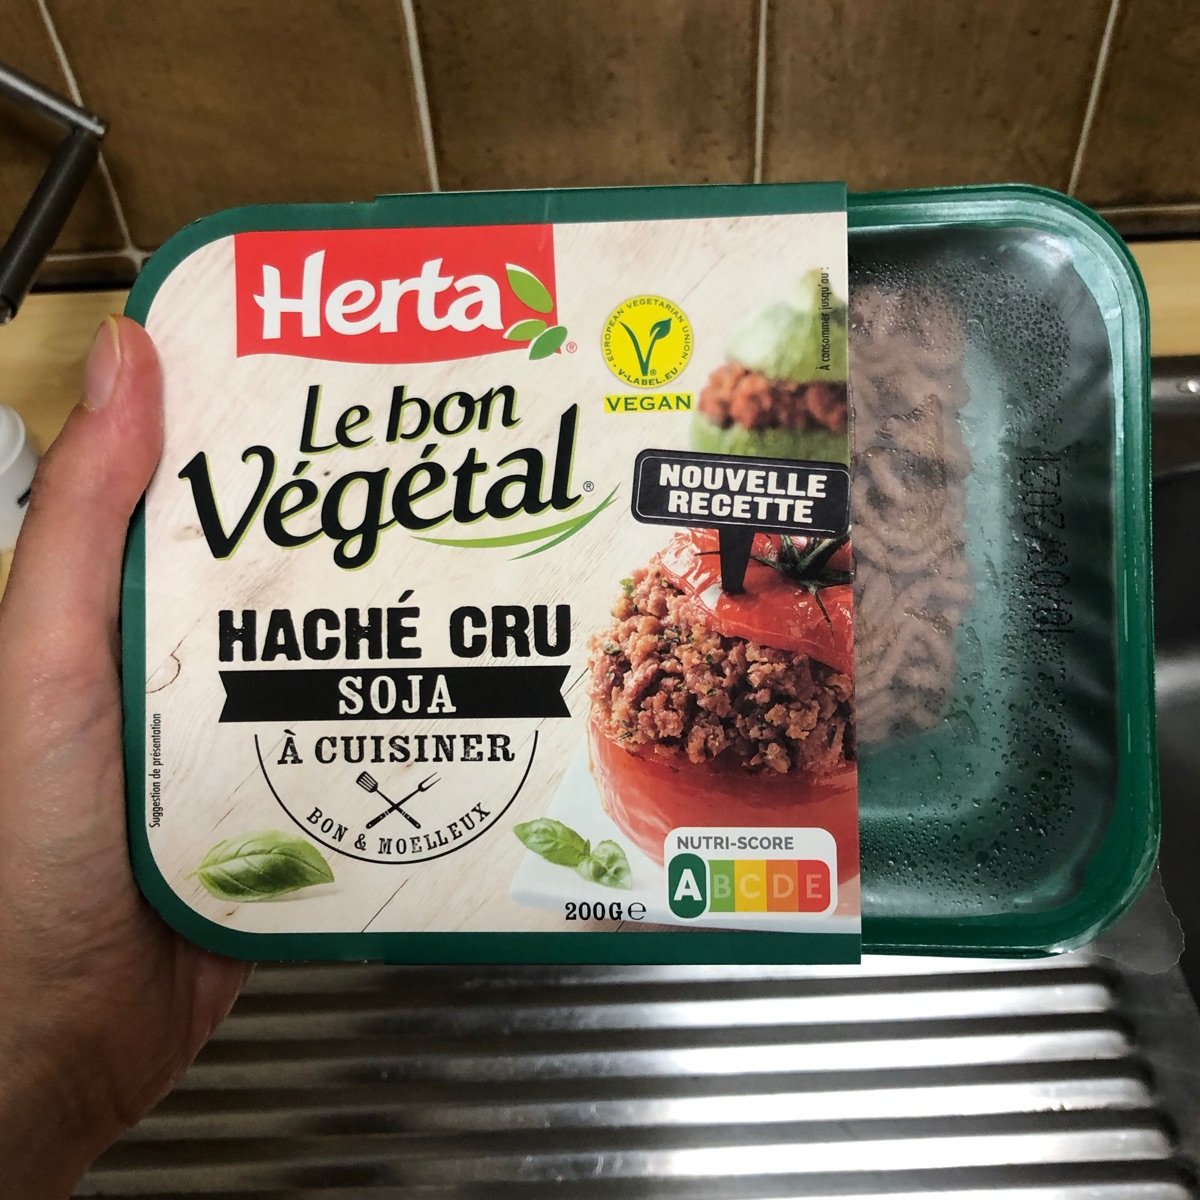 Avis sur Haché cru soja Le bon végétal par Herta | abillion